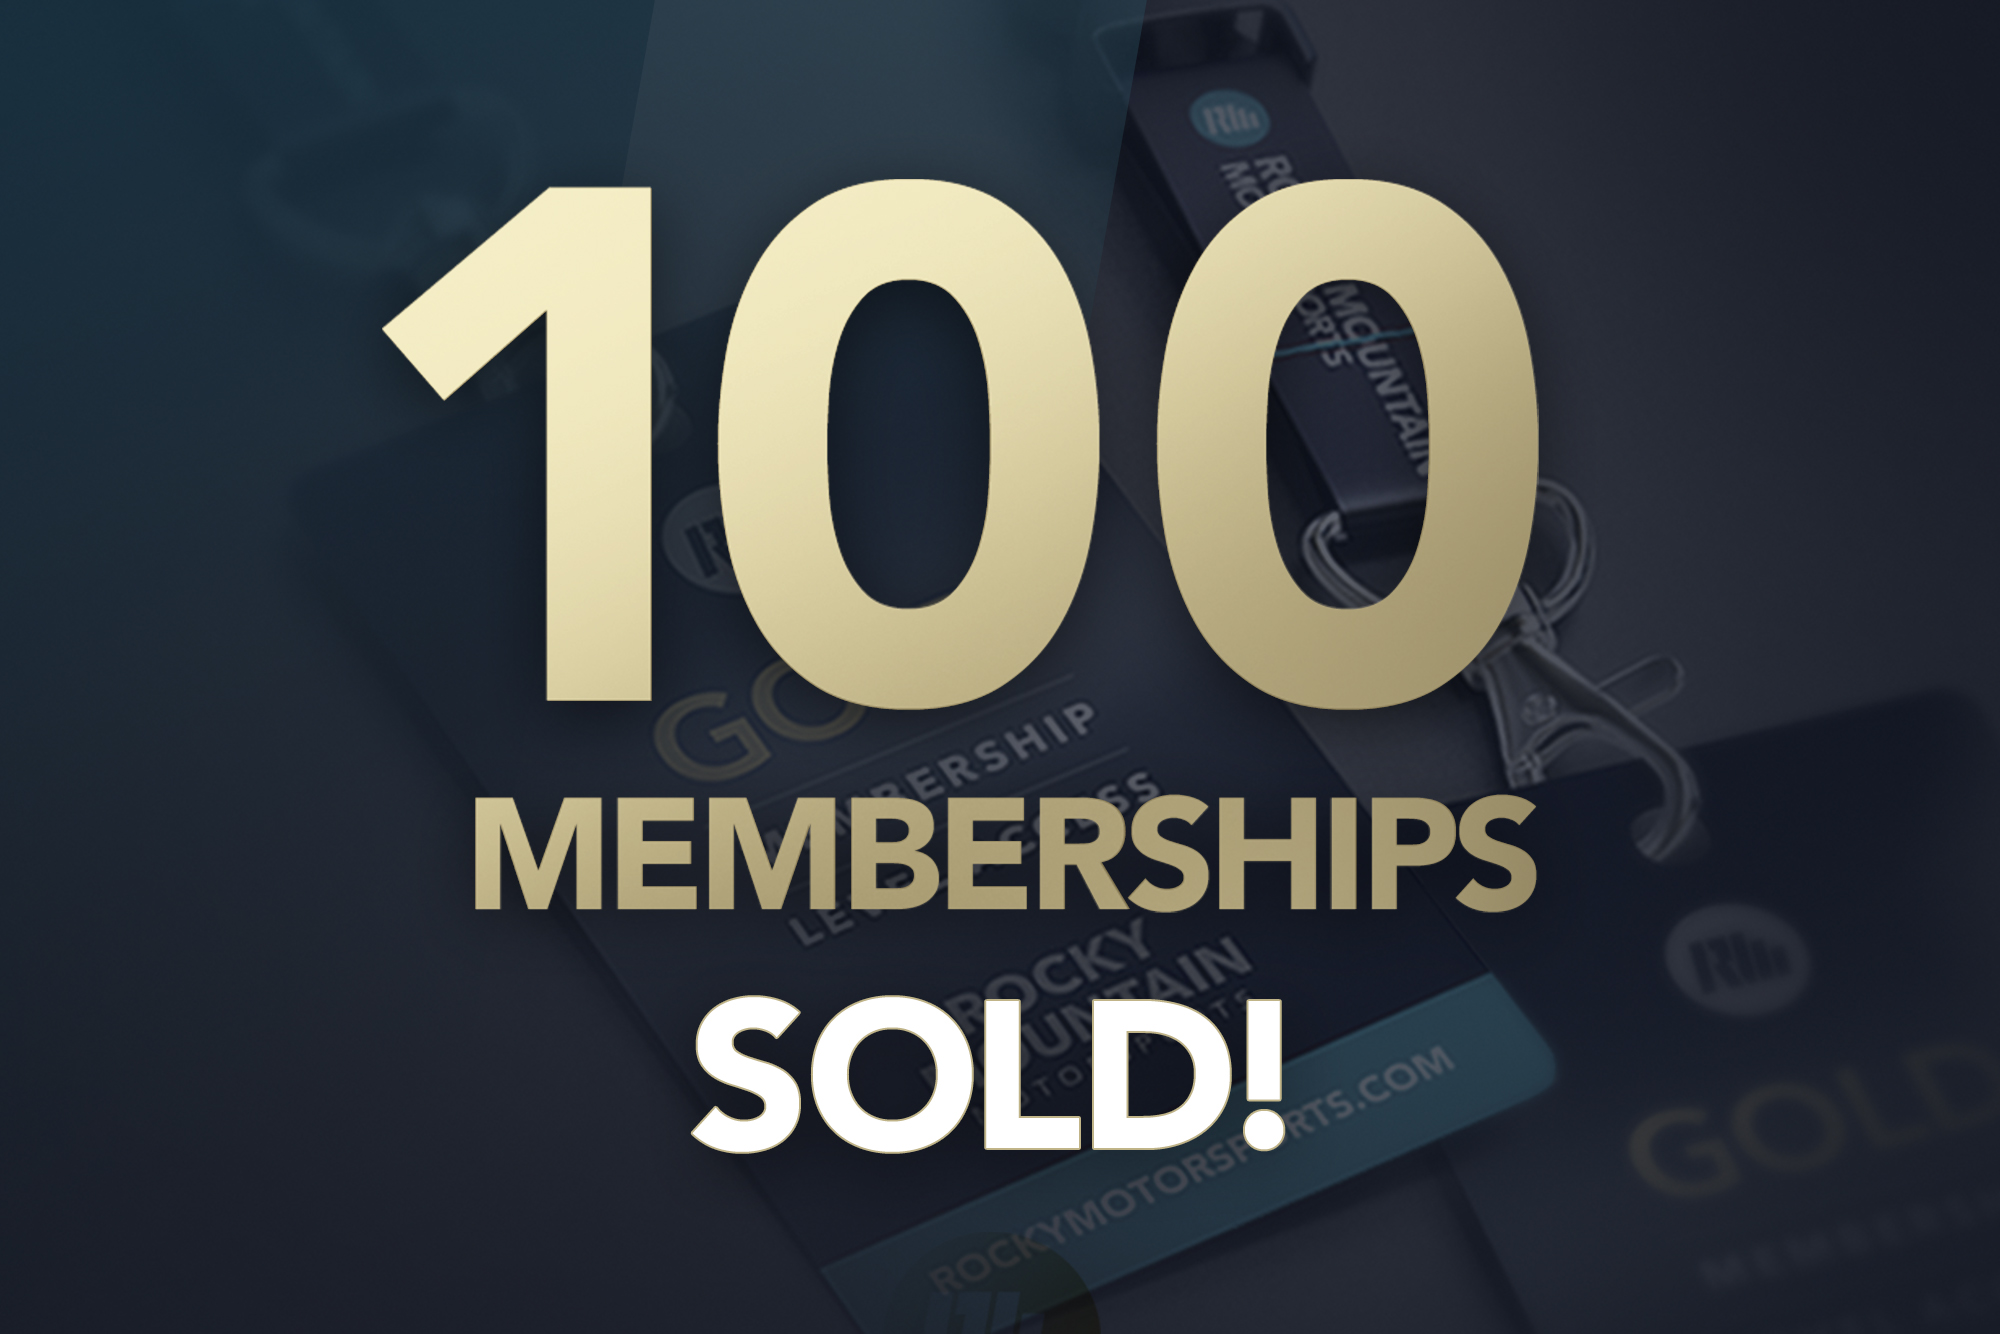 RMM Surpasses 100 Members!